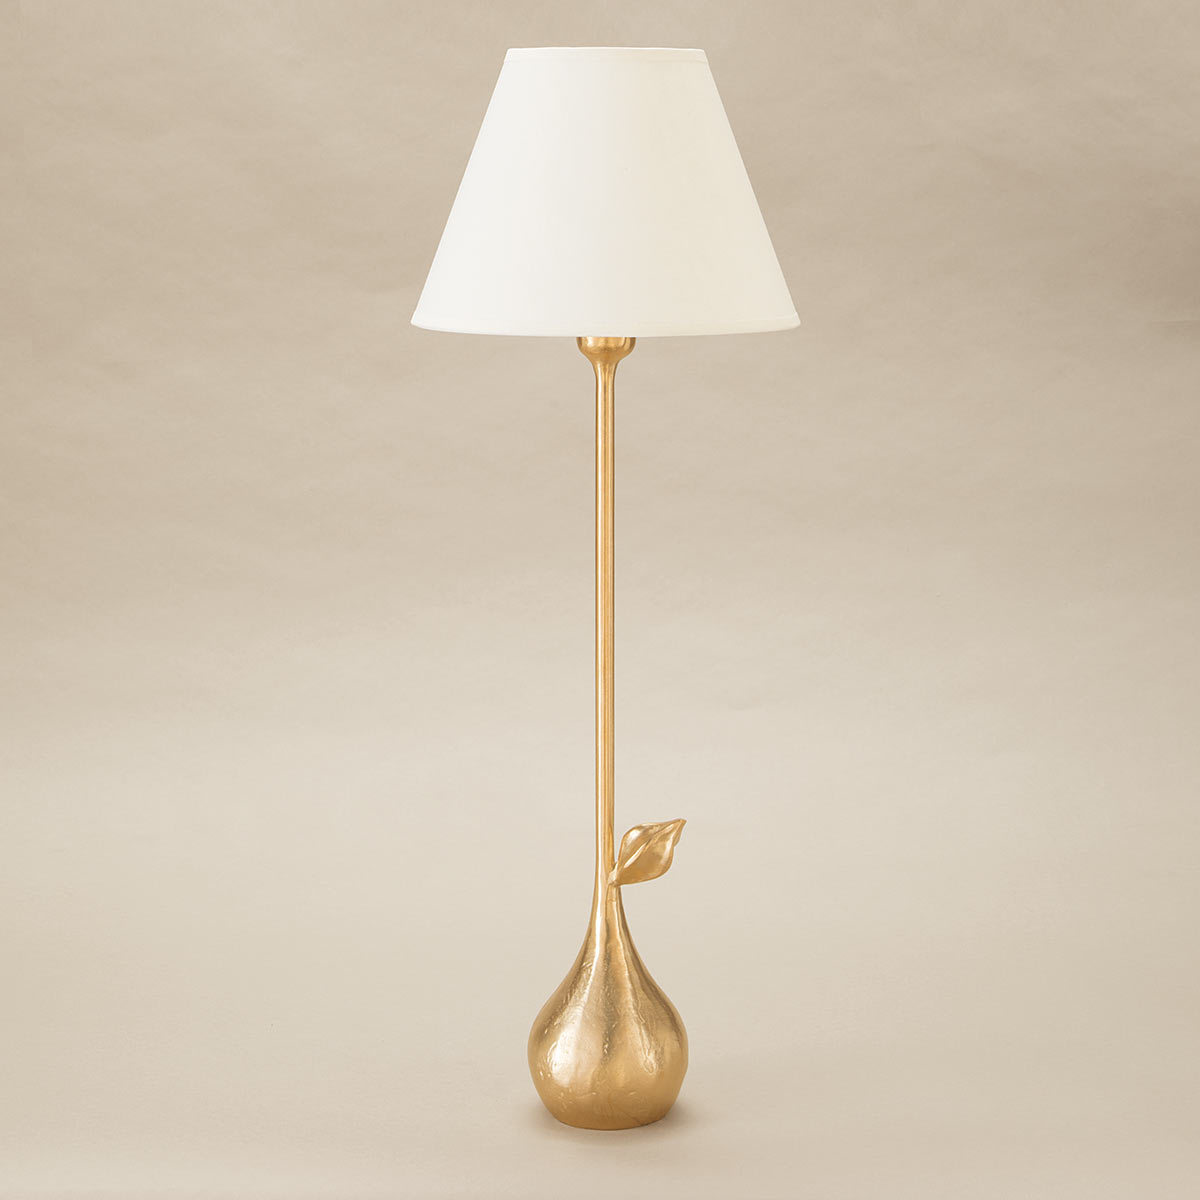 objet-insolite-clara-lampe-bronze-or-Decoris-Interior_Design-Zurich.jpg